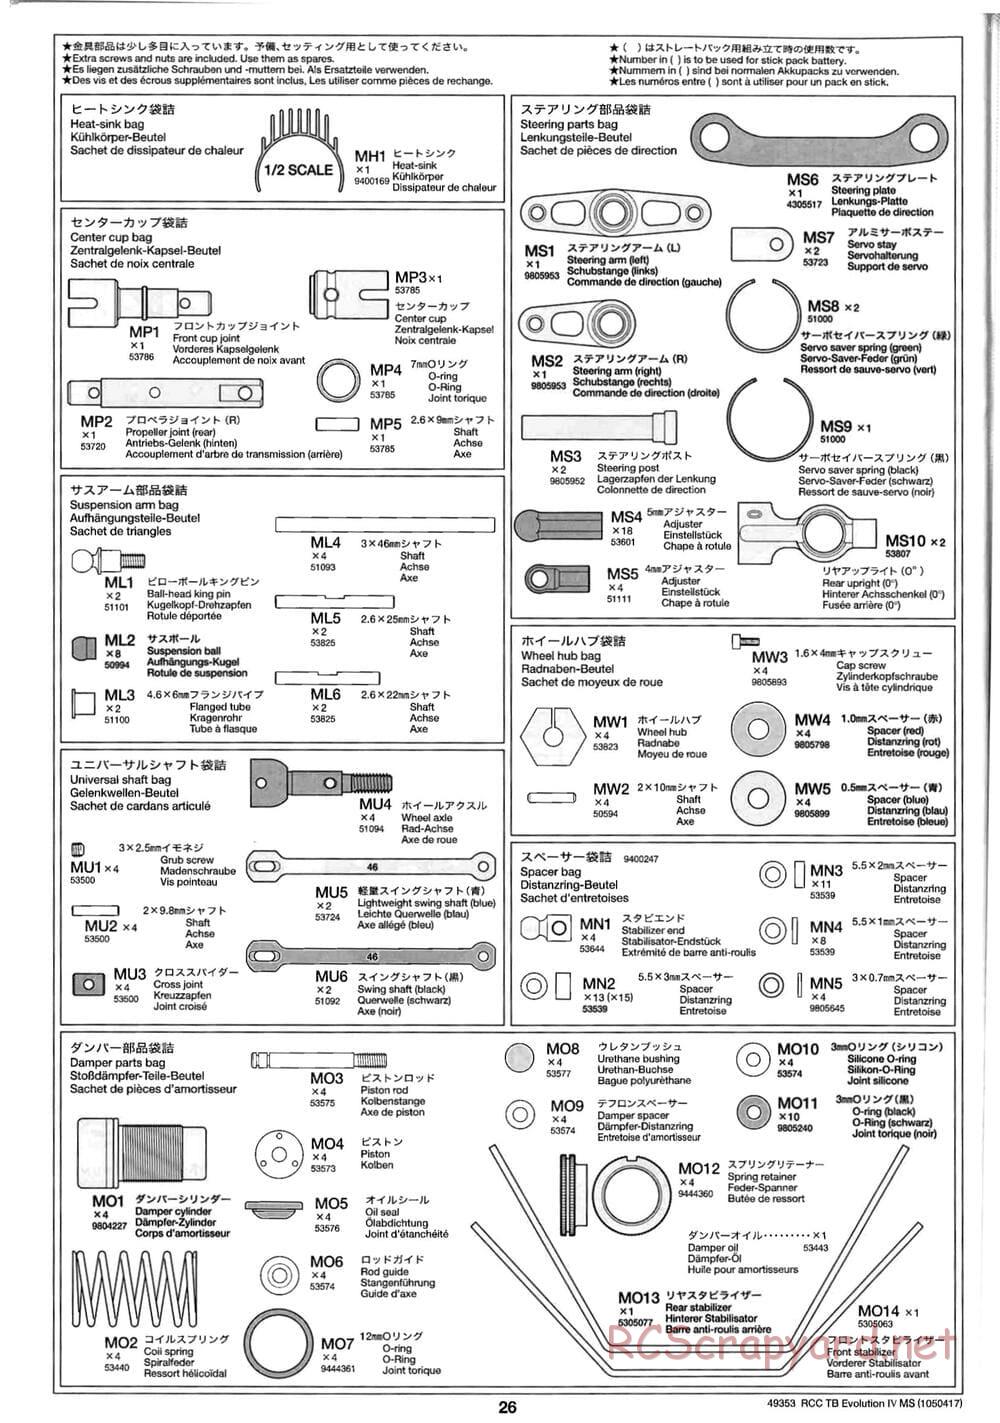 Tamiya - TB Evolution IV MS Chassis - Manual - Page 26